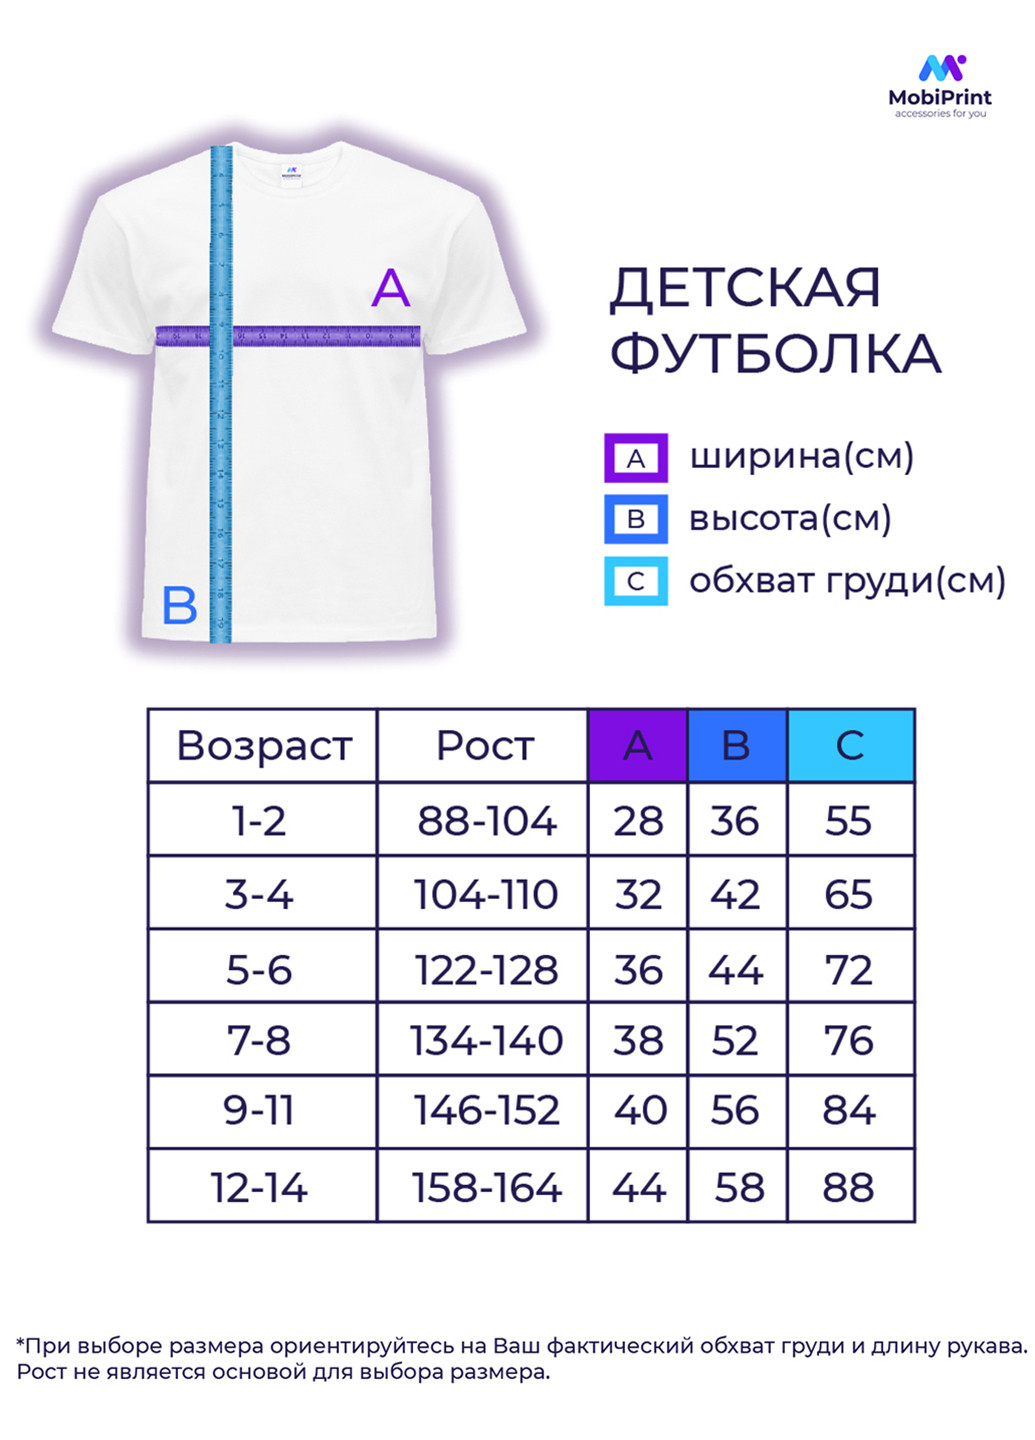 Світло-сіра демісезонна футболка дитяча пубг пабг (pubg) (9224-1185) MobiPrint